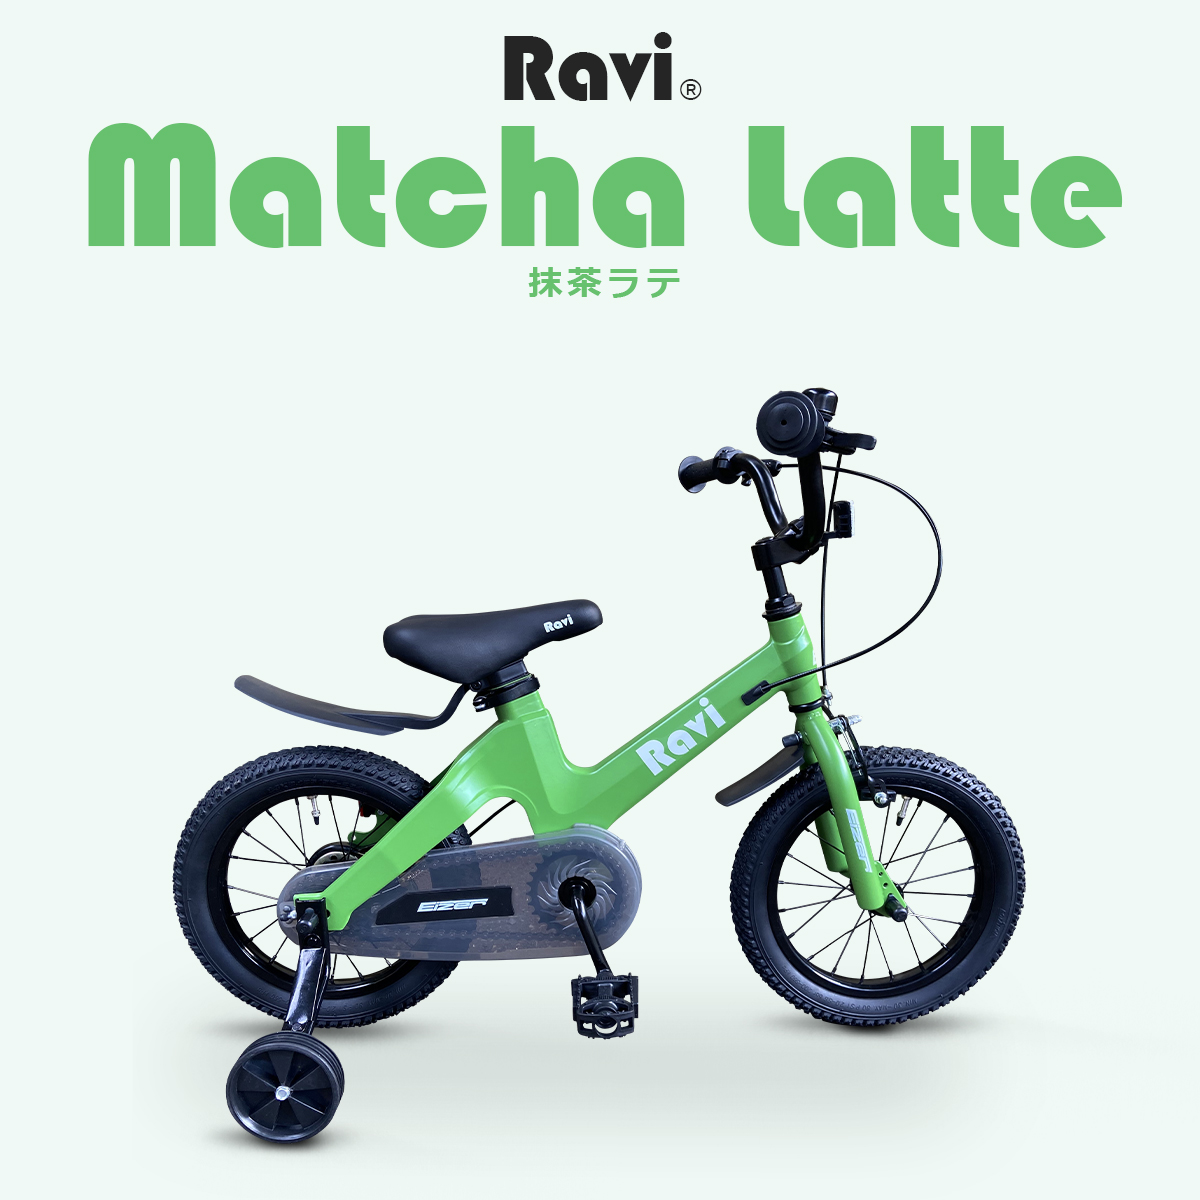 子供用 自転車 Ravi 14インチ 16インチ 18インチ プレゼント 新学期 補助輪付き 軽量 軽い 児童用 4歳 5歳 6歳 7歳 8歳 9歳  10歳 11歳 12歳